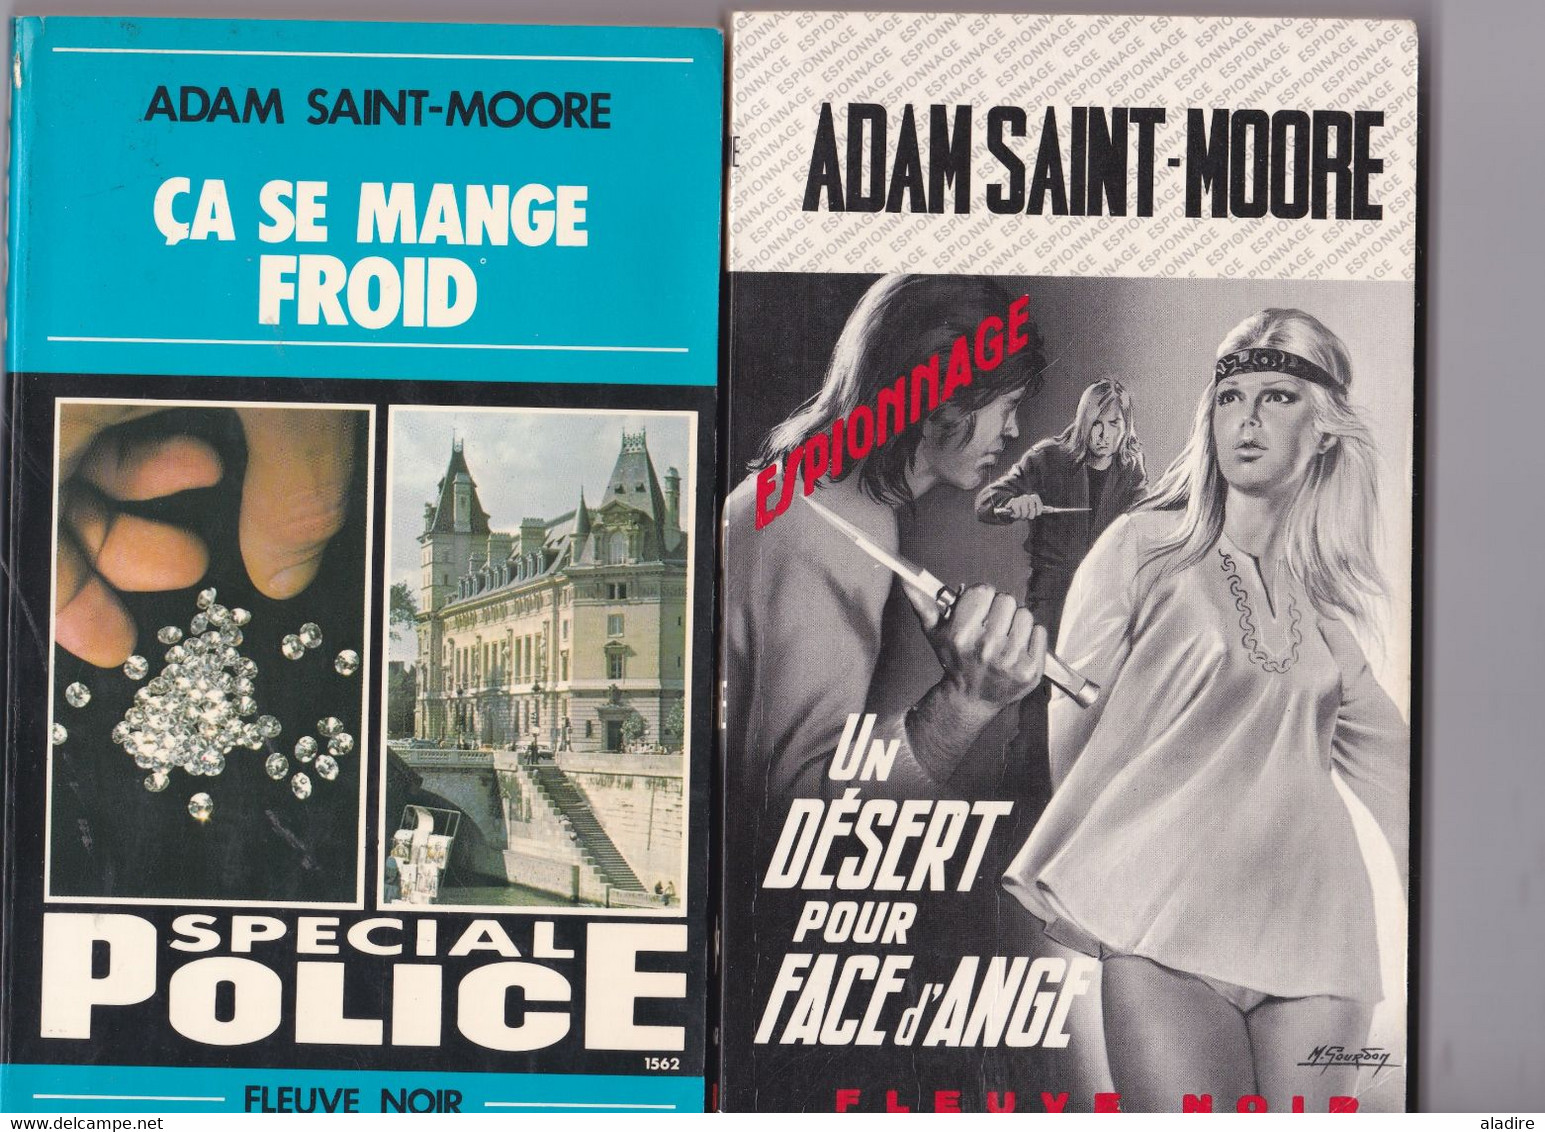 ADAM SAINT MOORE - Lot de 22 romans de cet auteur de romans policiers Fleuve Noir - 1926 - 2016